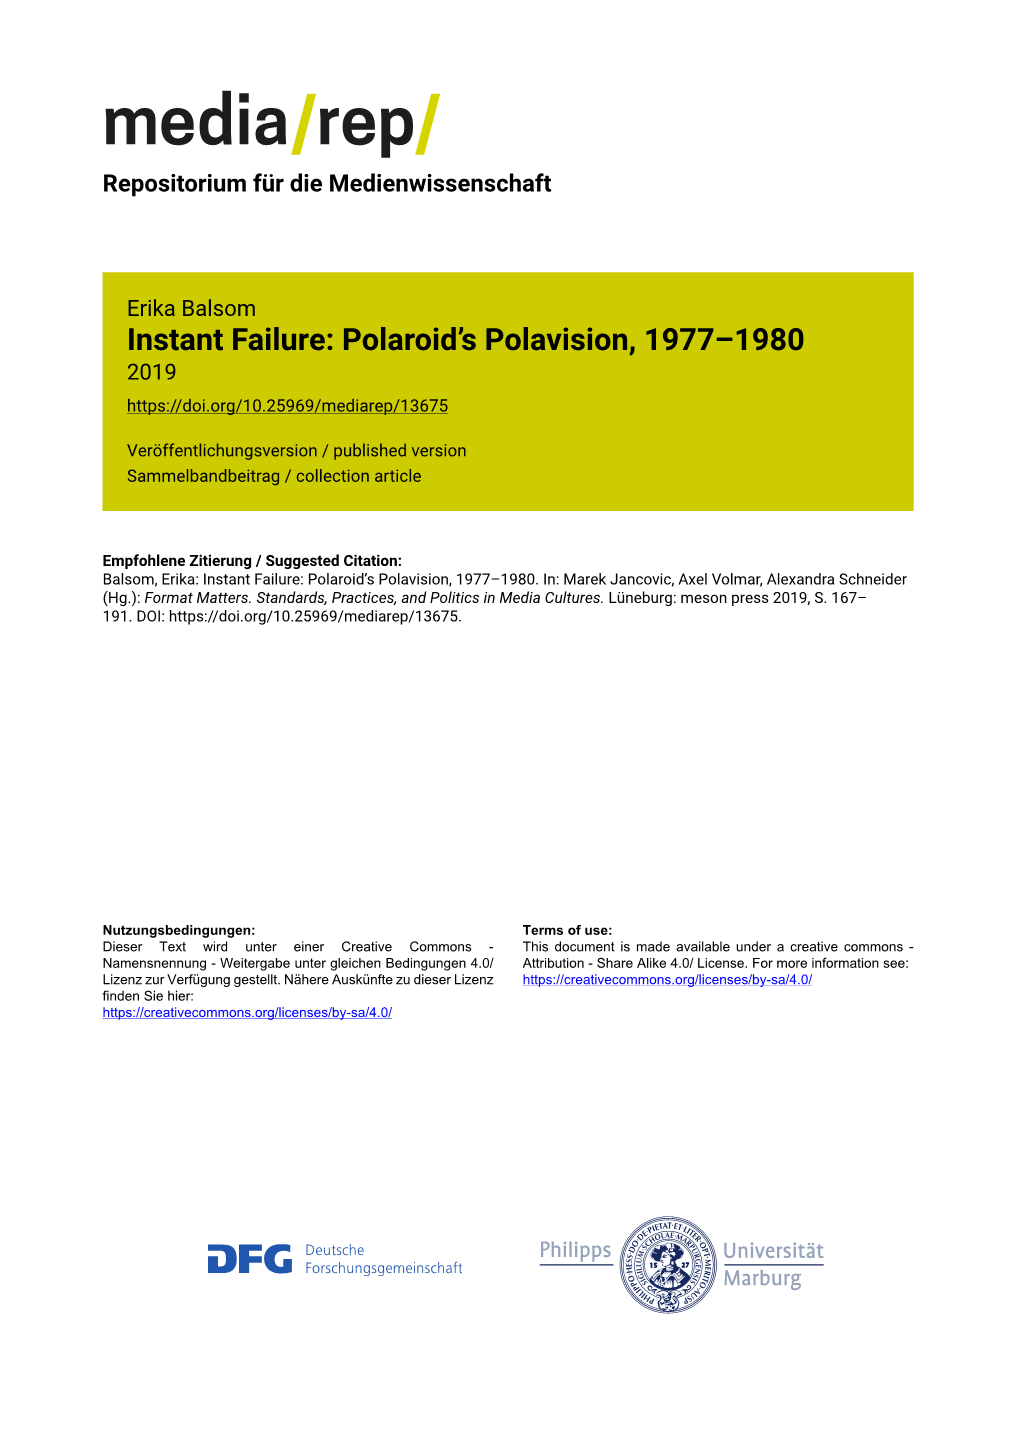 Instant Failure: Polaroid's Polavision, 1977–1980